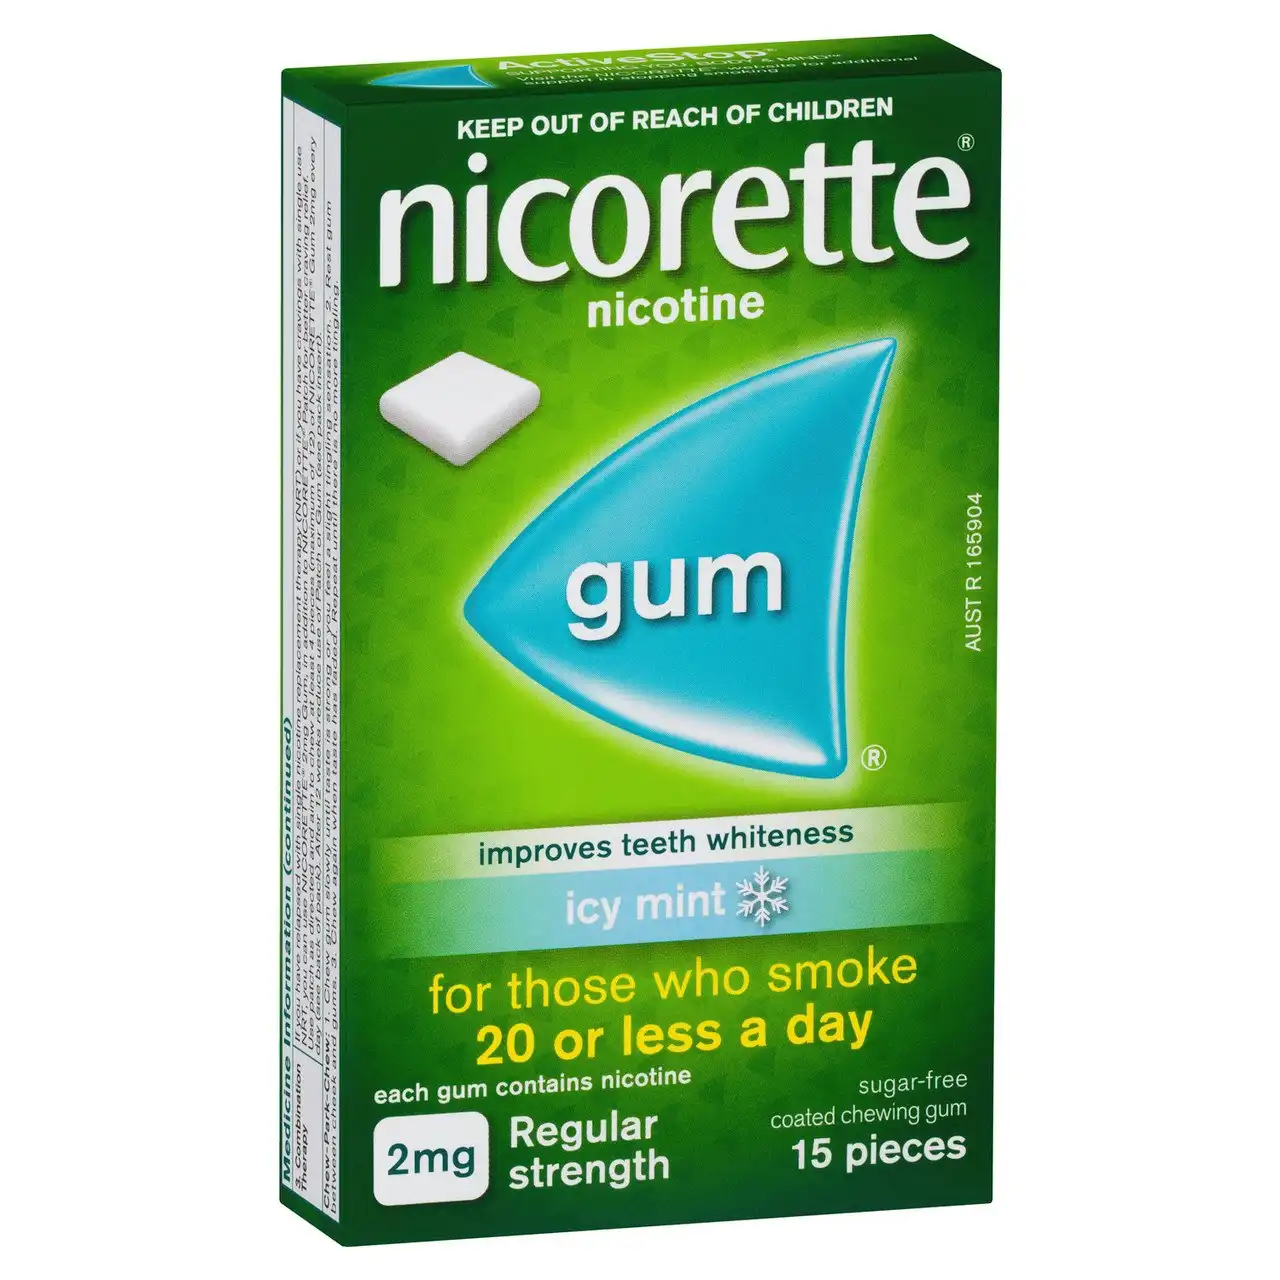 Nicorette Quit Smoking Regular Strength Nicotine Gum Icy Mint 15 Pack